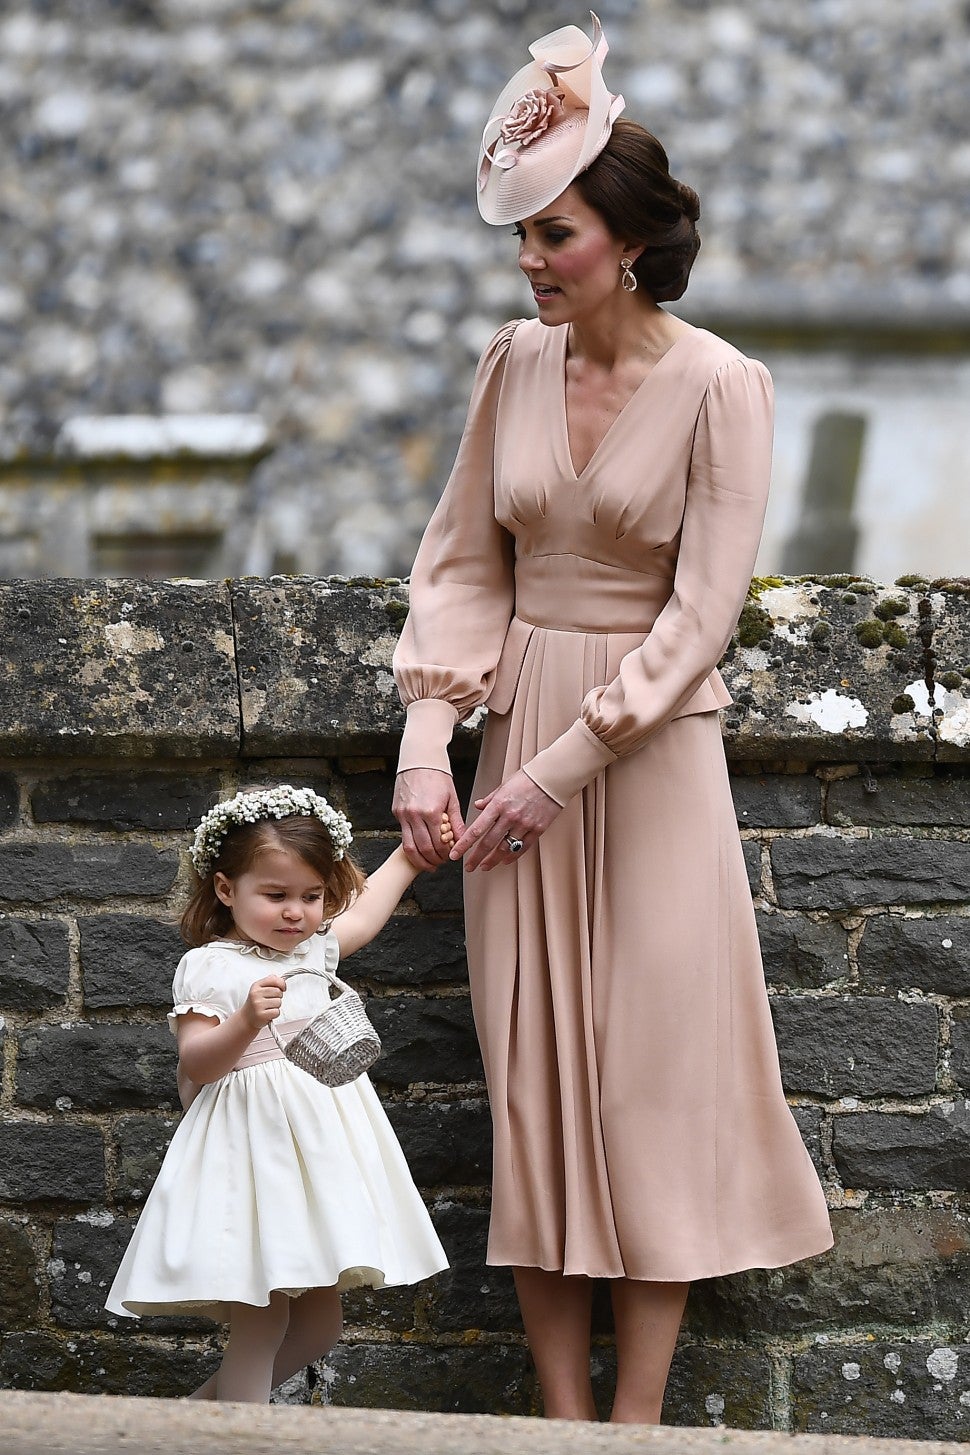 Kate Middleton at Pippa's Wedding